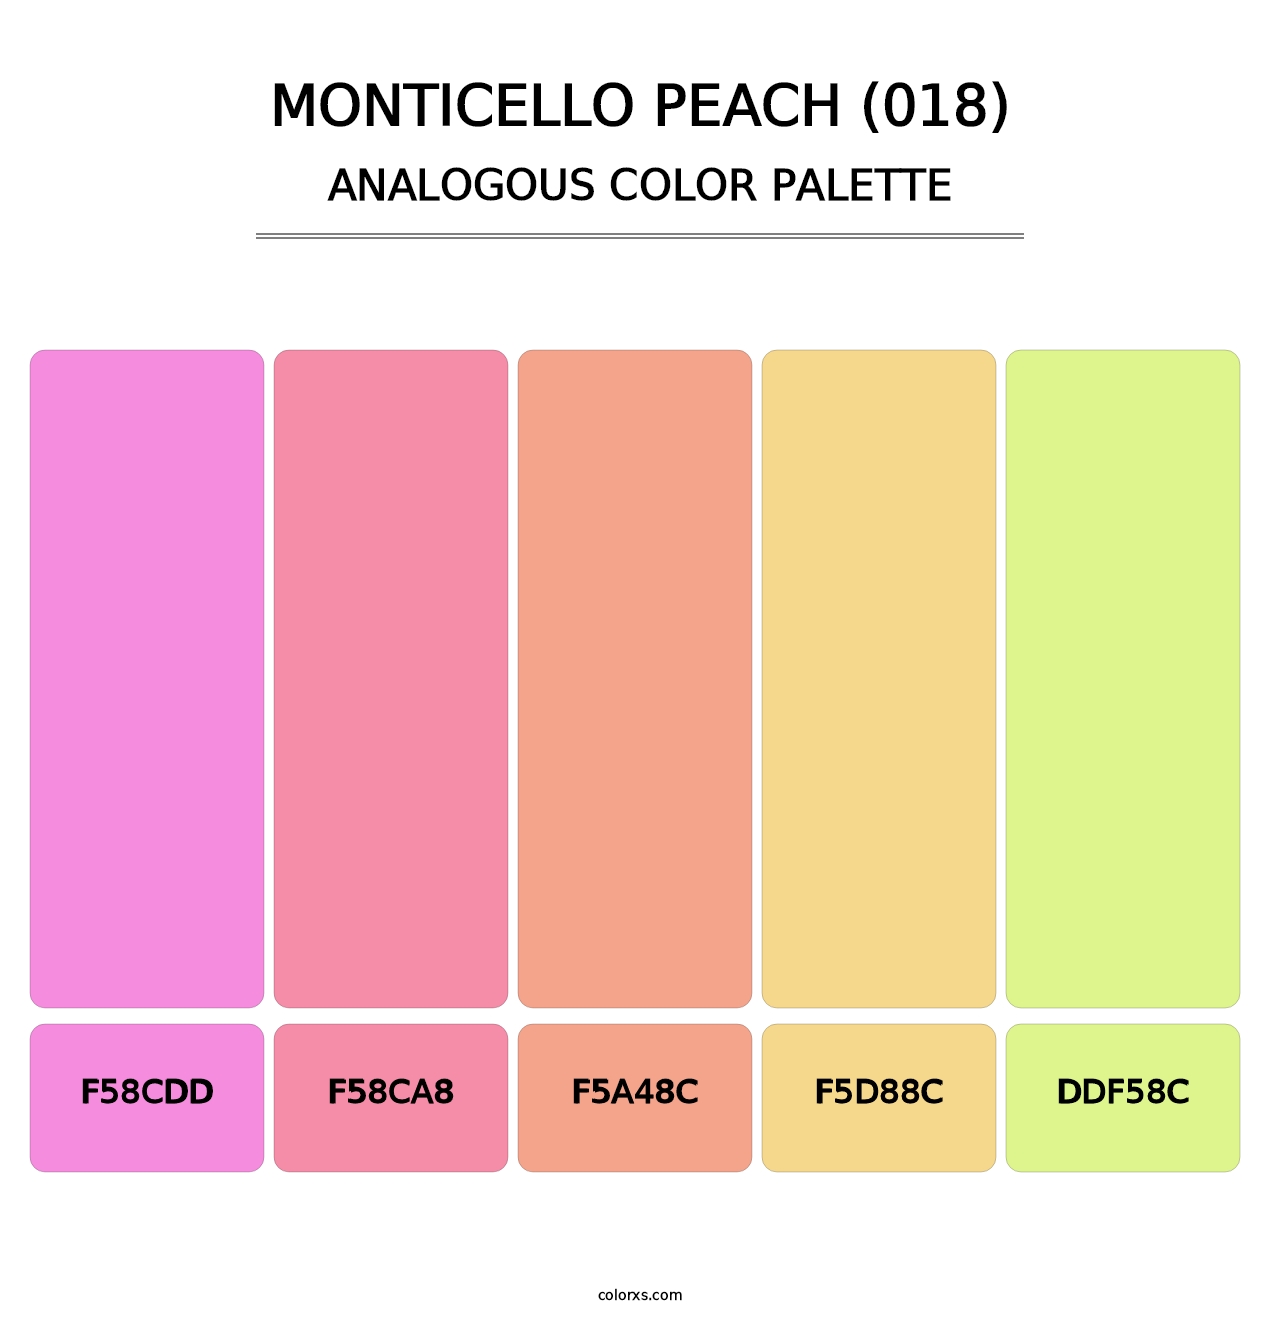 Monticello Peach (018) - Analogous Color Palette